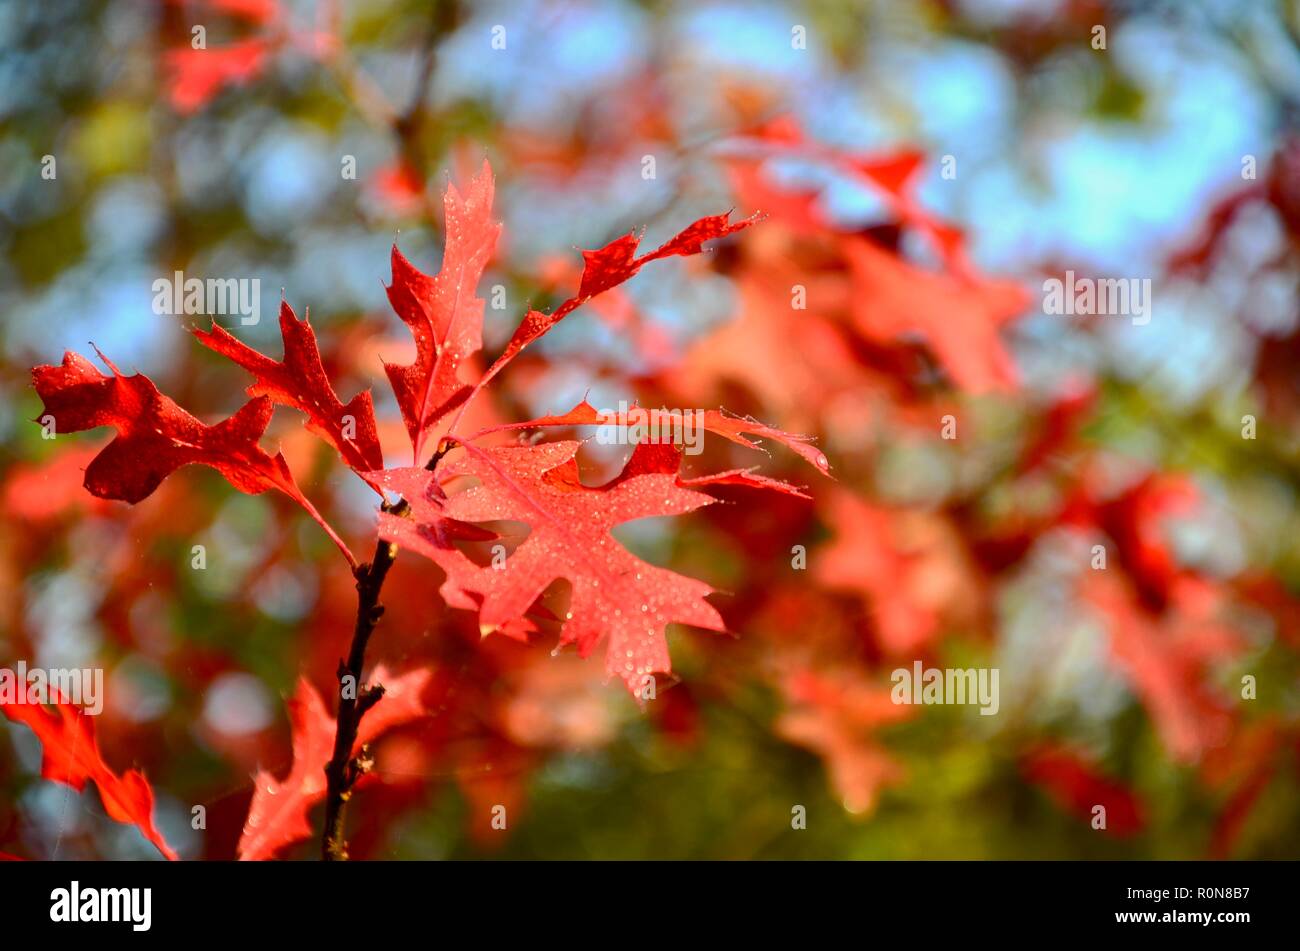 Stift Eiche (Quercus palustris) Blätter im Herbst Farbe, verschwommen, unscharf Hintergrund, Lincs, England, UK. Stockfoto